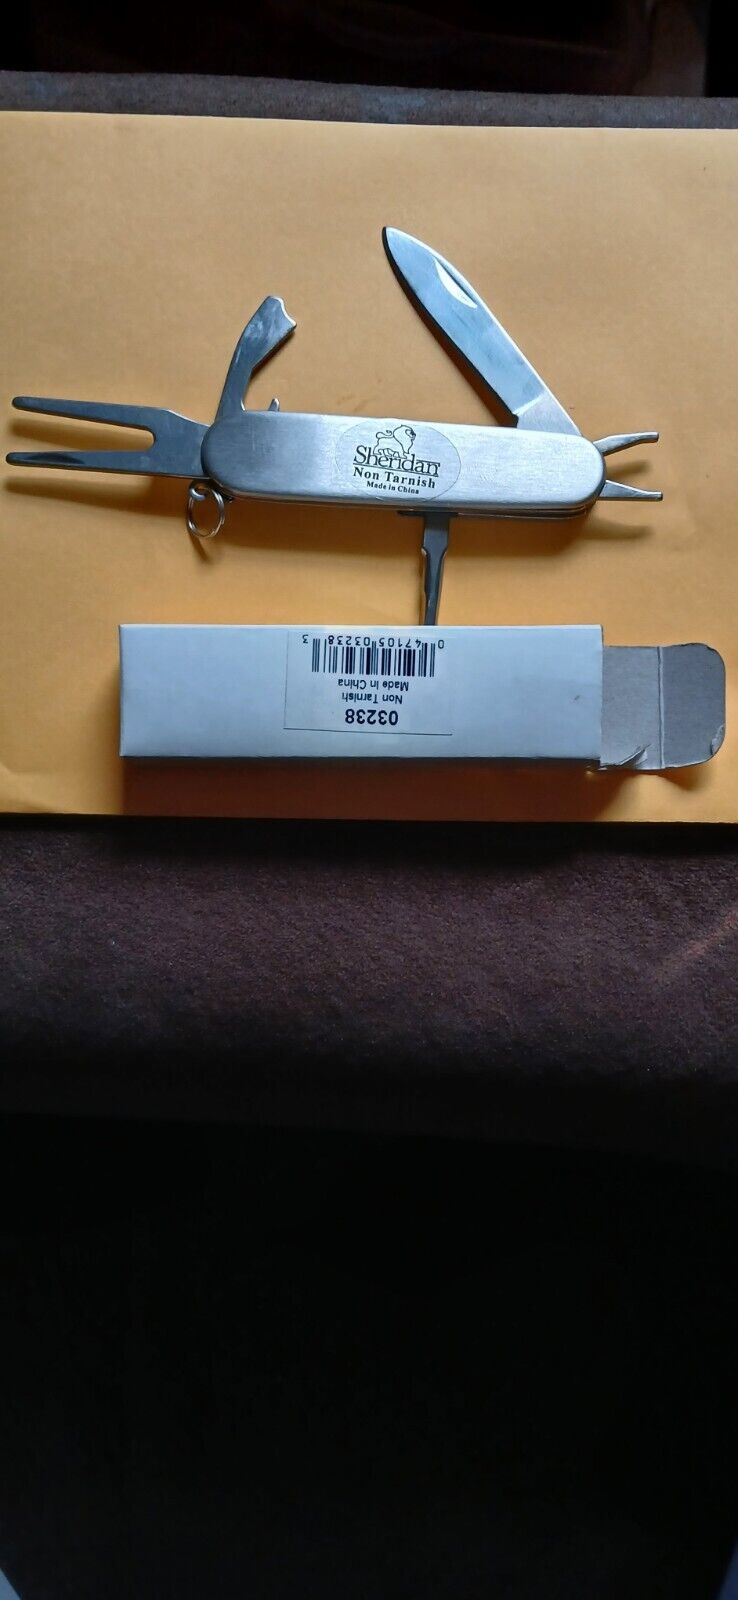 Sheridan Non-Tarnish Pocket Knife -Multitool-New In Box